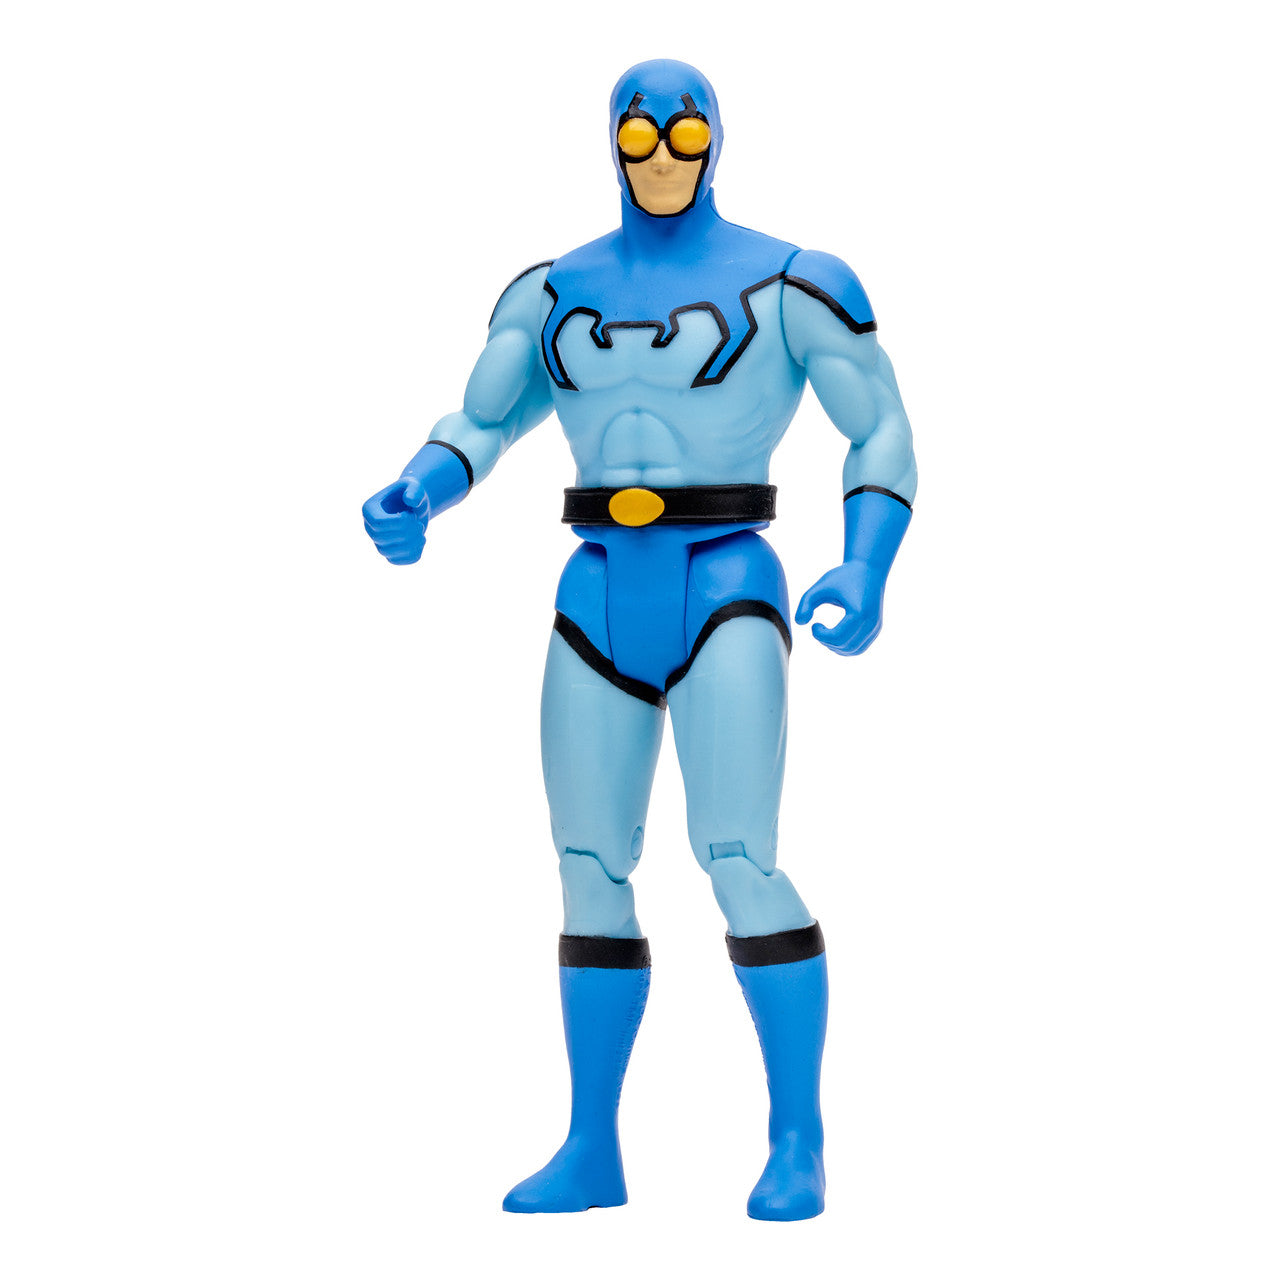 DC Super Powers Wave 7 - Blue Beetle 4.5" Action Figure Toy